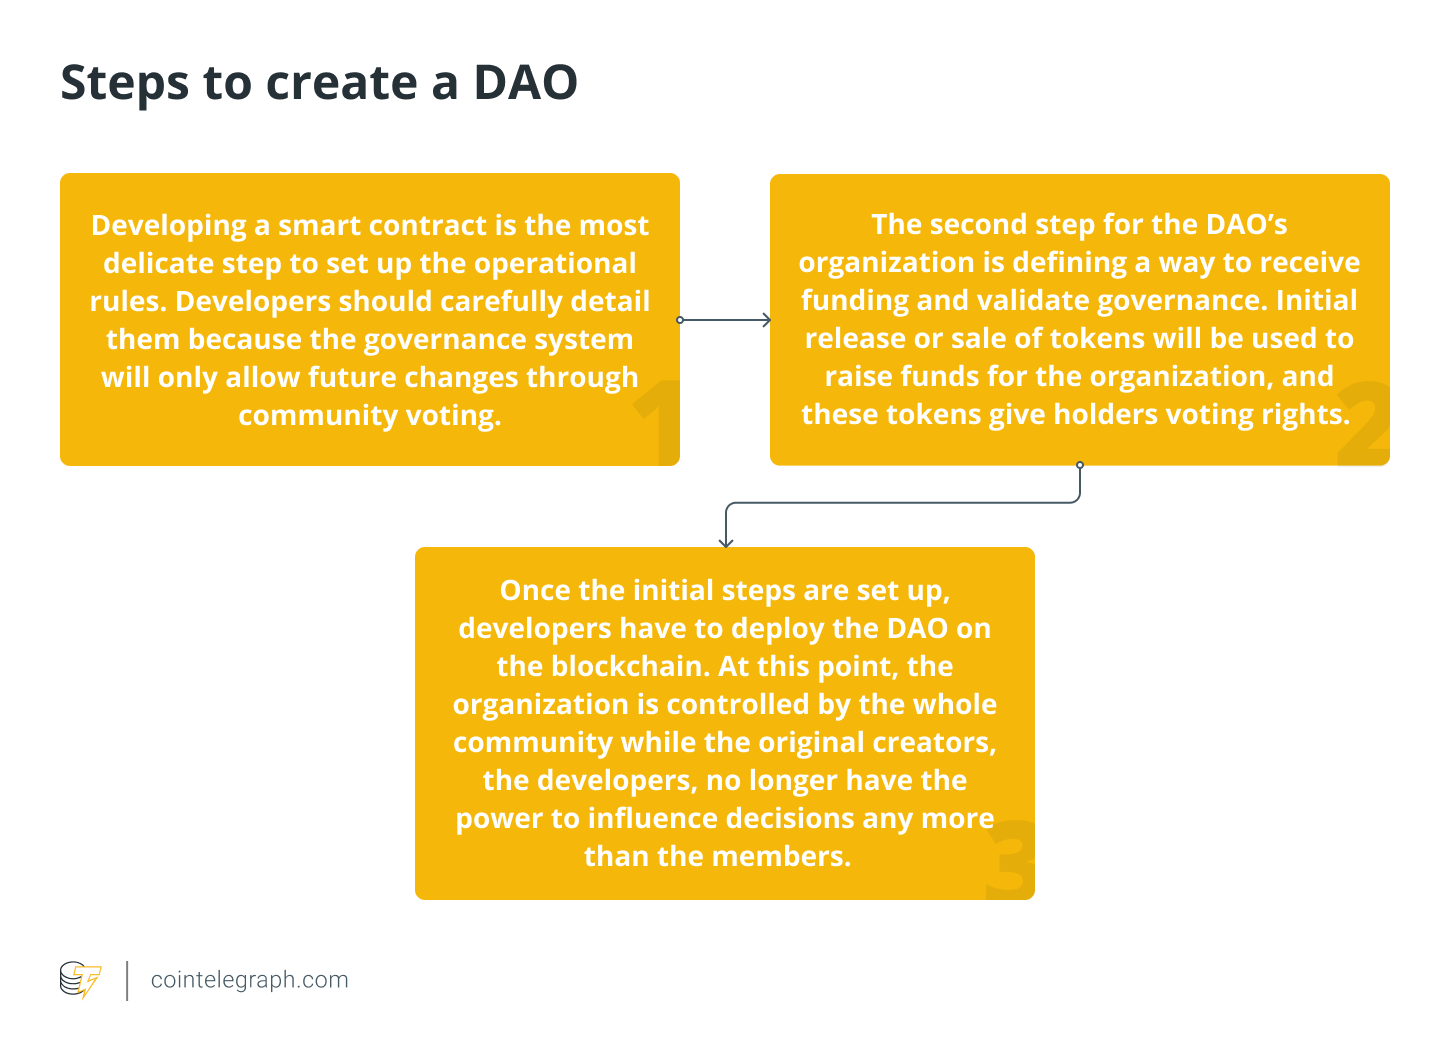 创建和启动一个 DAO 通常涉及三个主要步骤